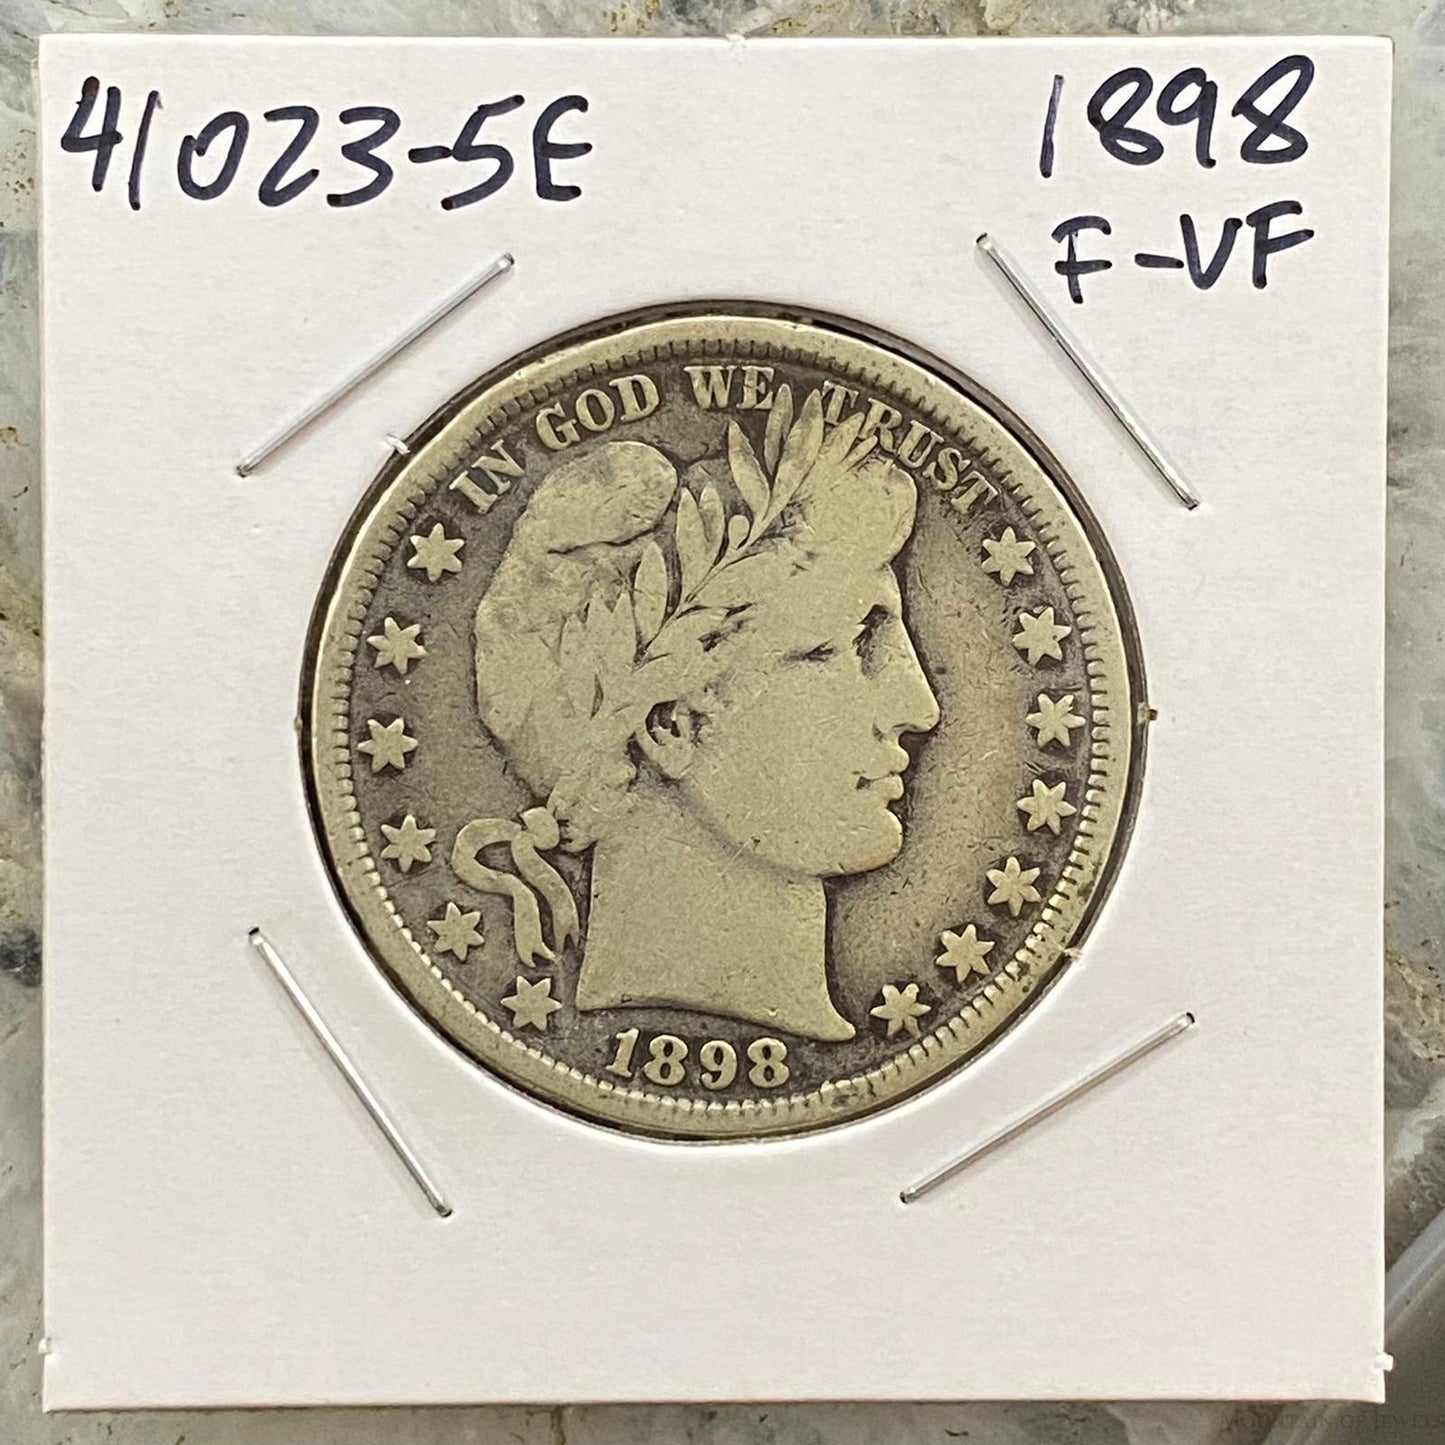 1898 US Barber Liberty Head Half Dollar F-VF Collectible Coin #41023-5E